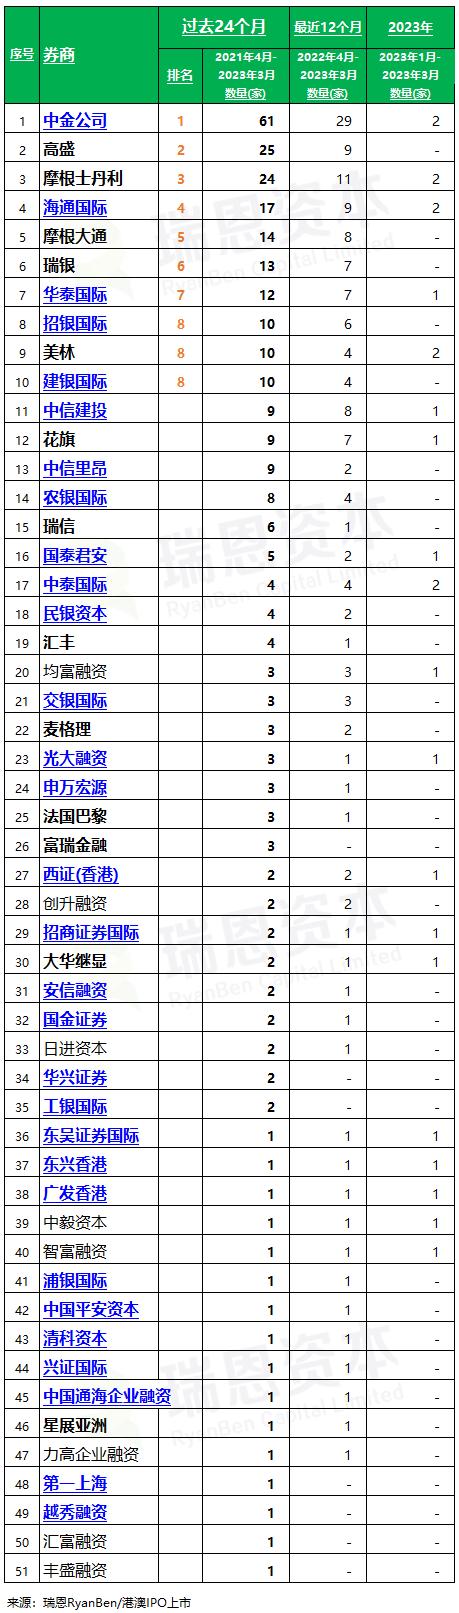 香港 IPO中介机构排行榜 (过去24个月：2021年4月至2023年3月)